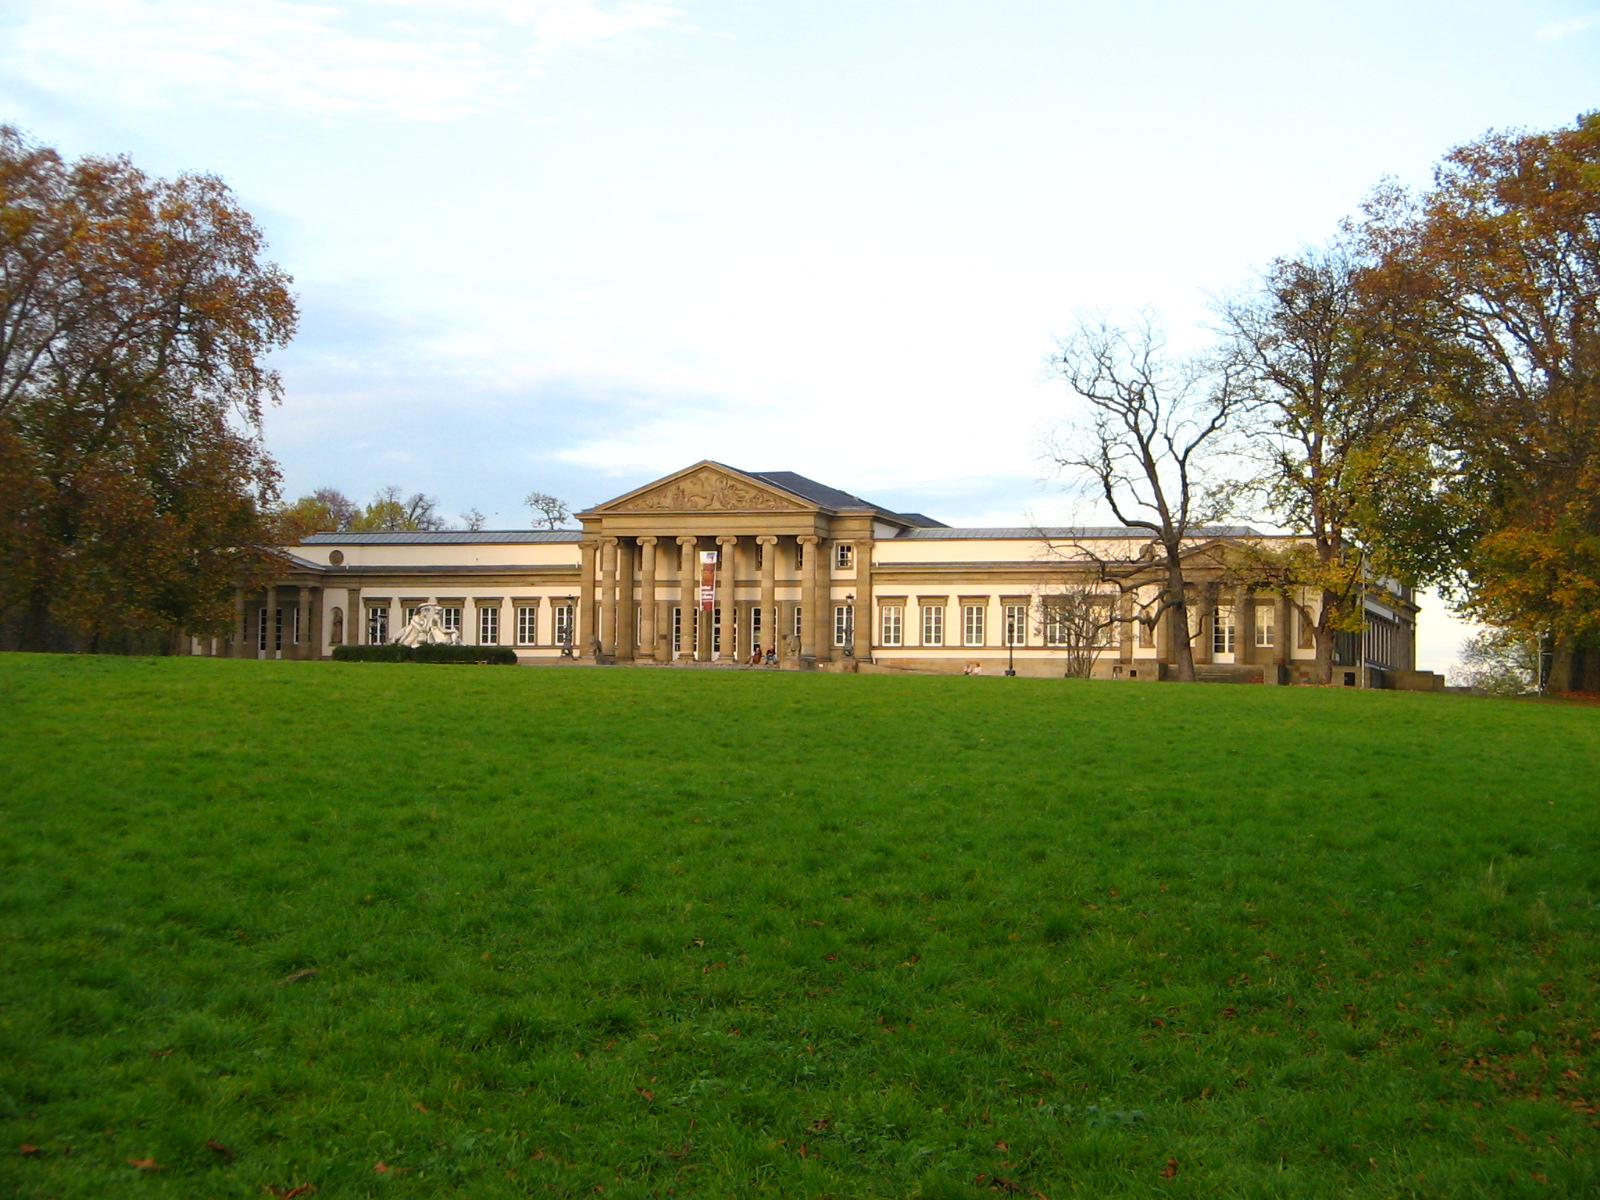 07.11.2005 - Schloss Rosenstein im Rosensteinpark in Stuttgart